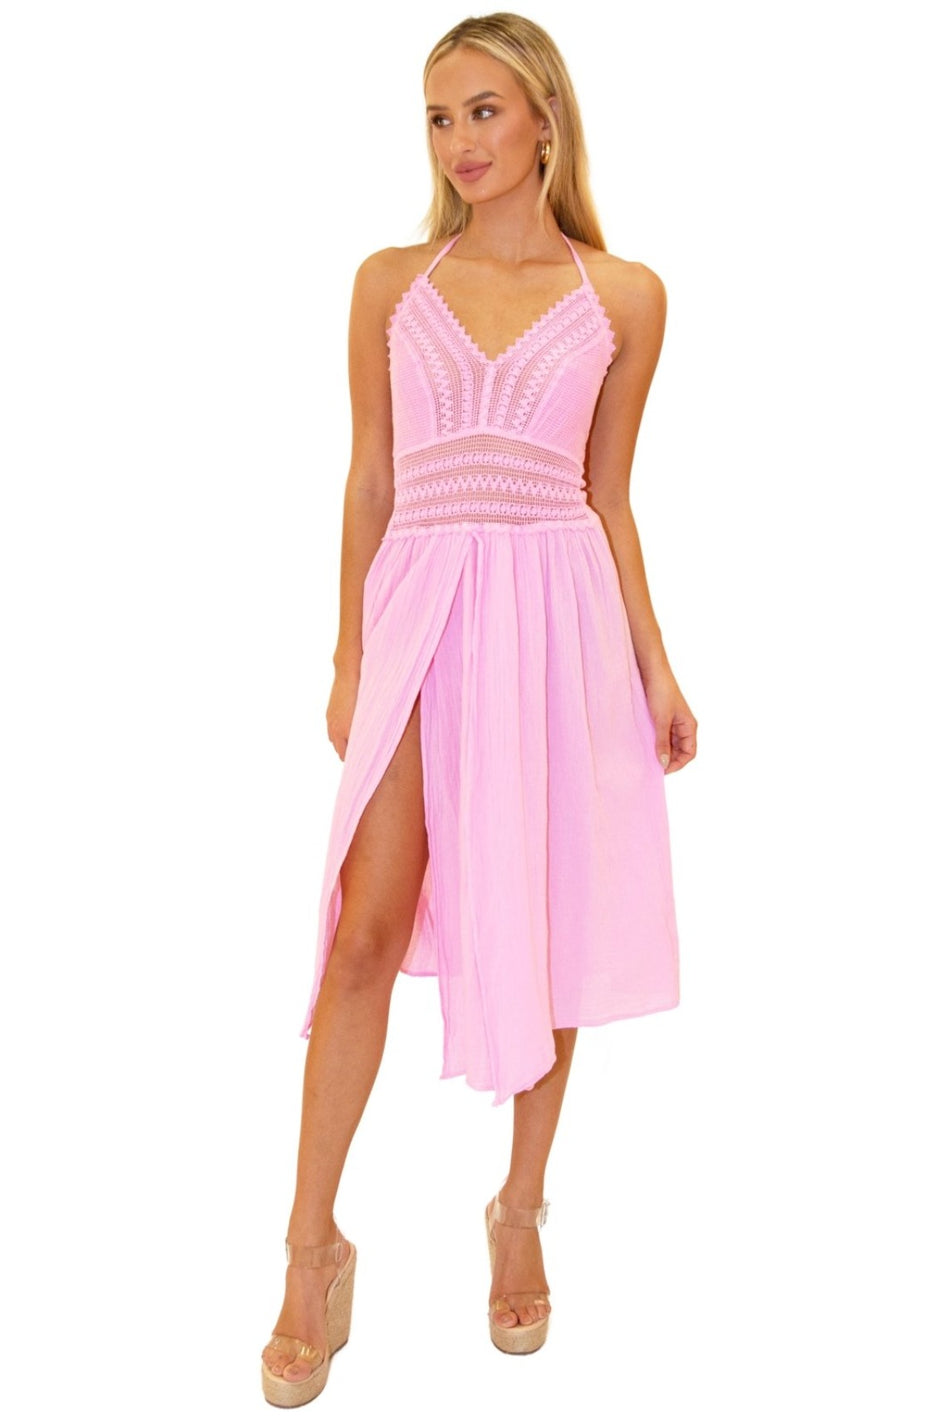 'Arabella' Panel High Split Dress - Seaspice Resort Wear